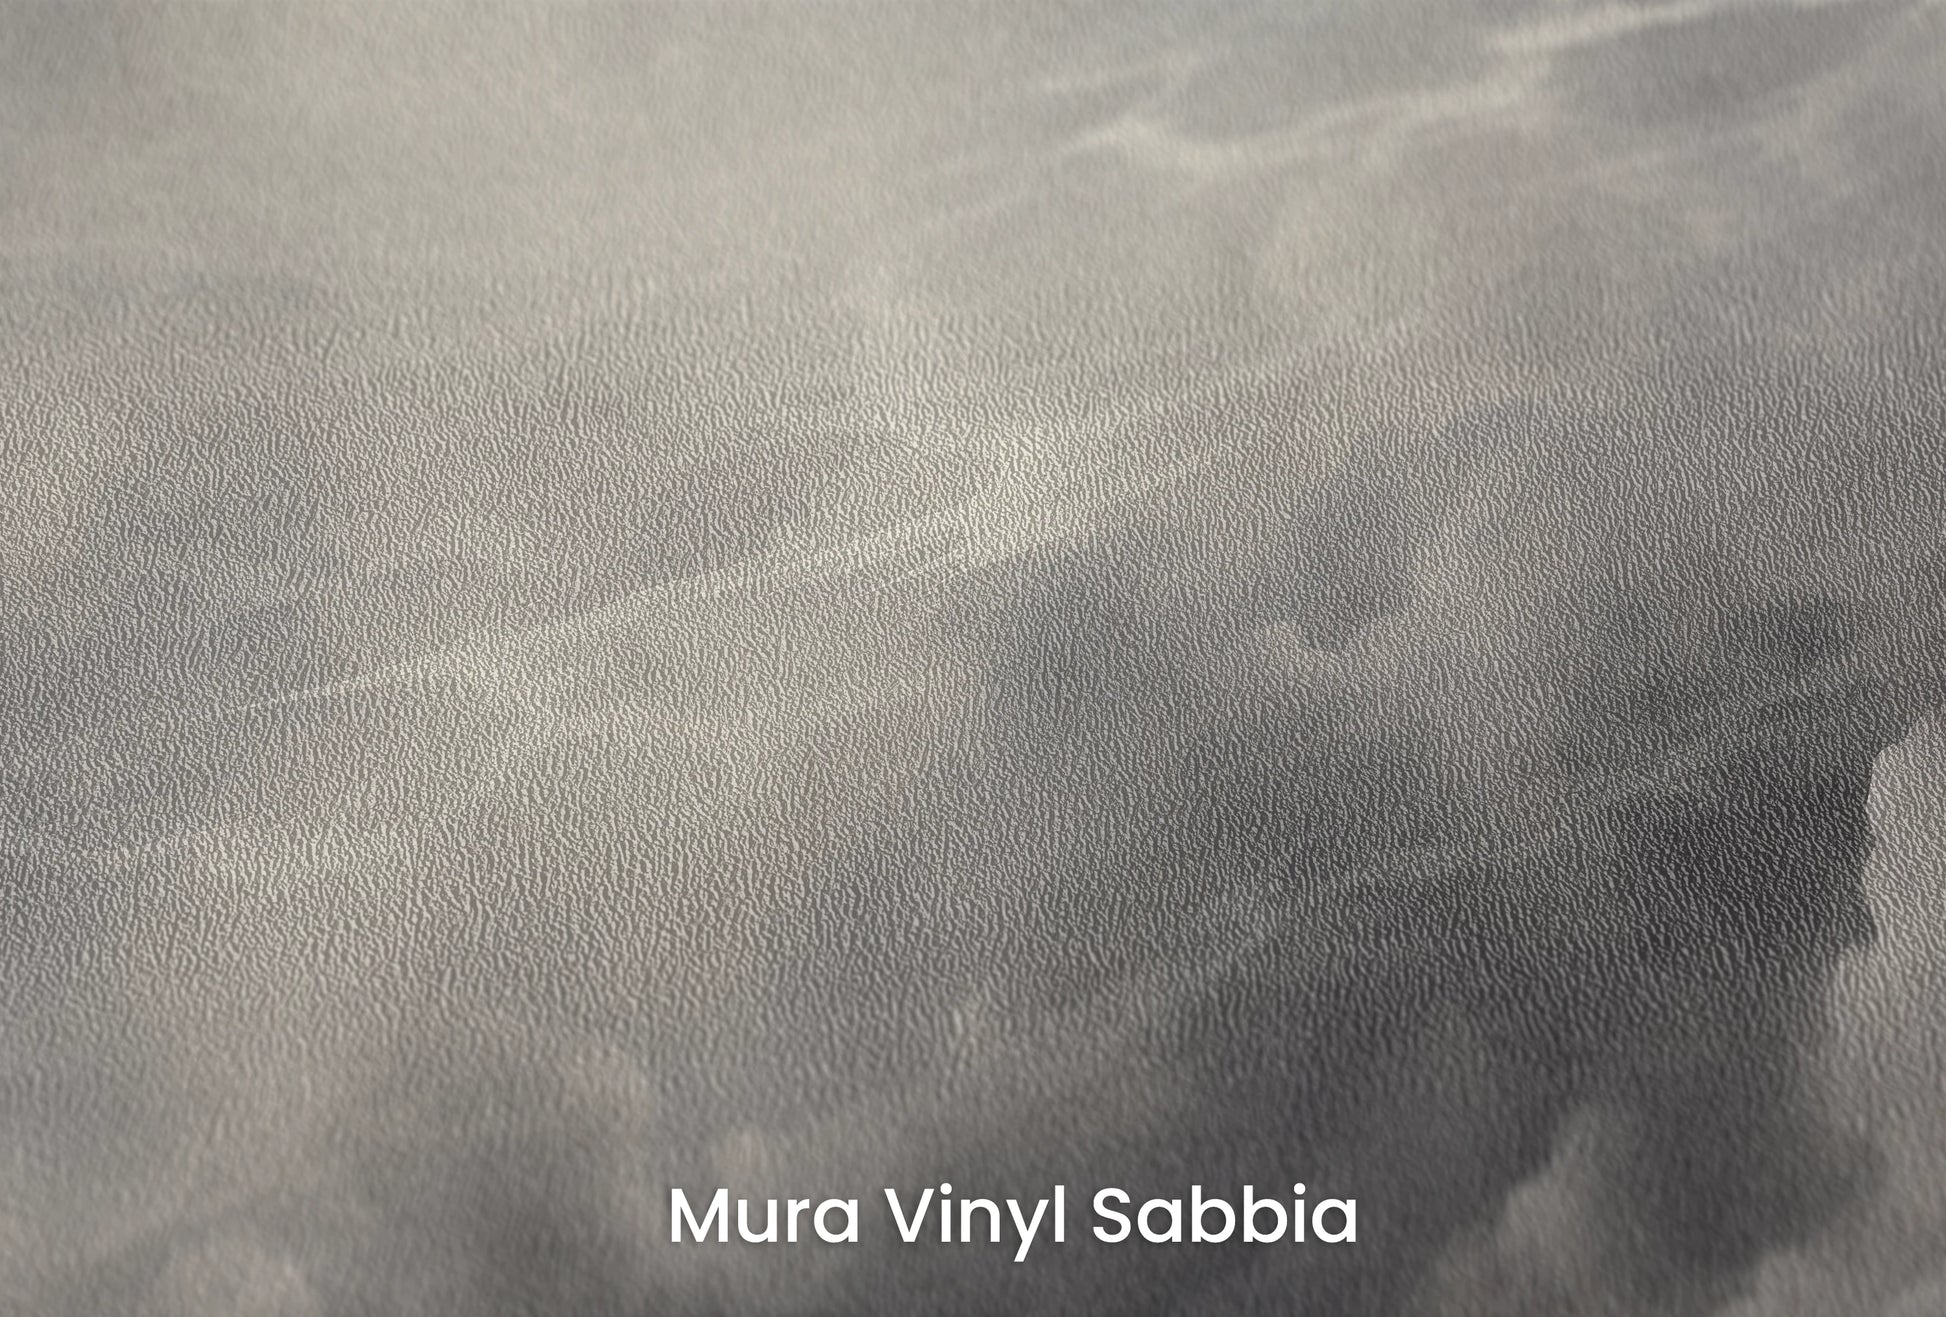 Zbliżenie na artystyczną fototapetę o nazwie Silver Lining Drama na podłożu Mura Vinyl Sabbia struktura grubego ziarna piasku.